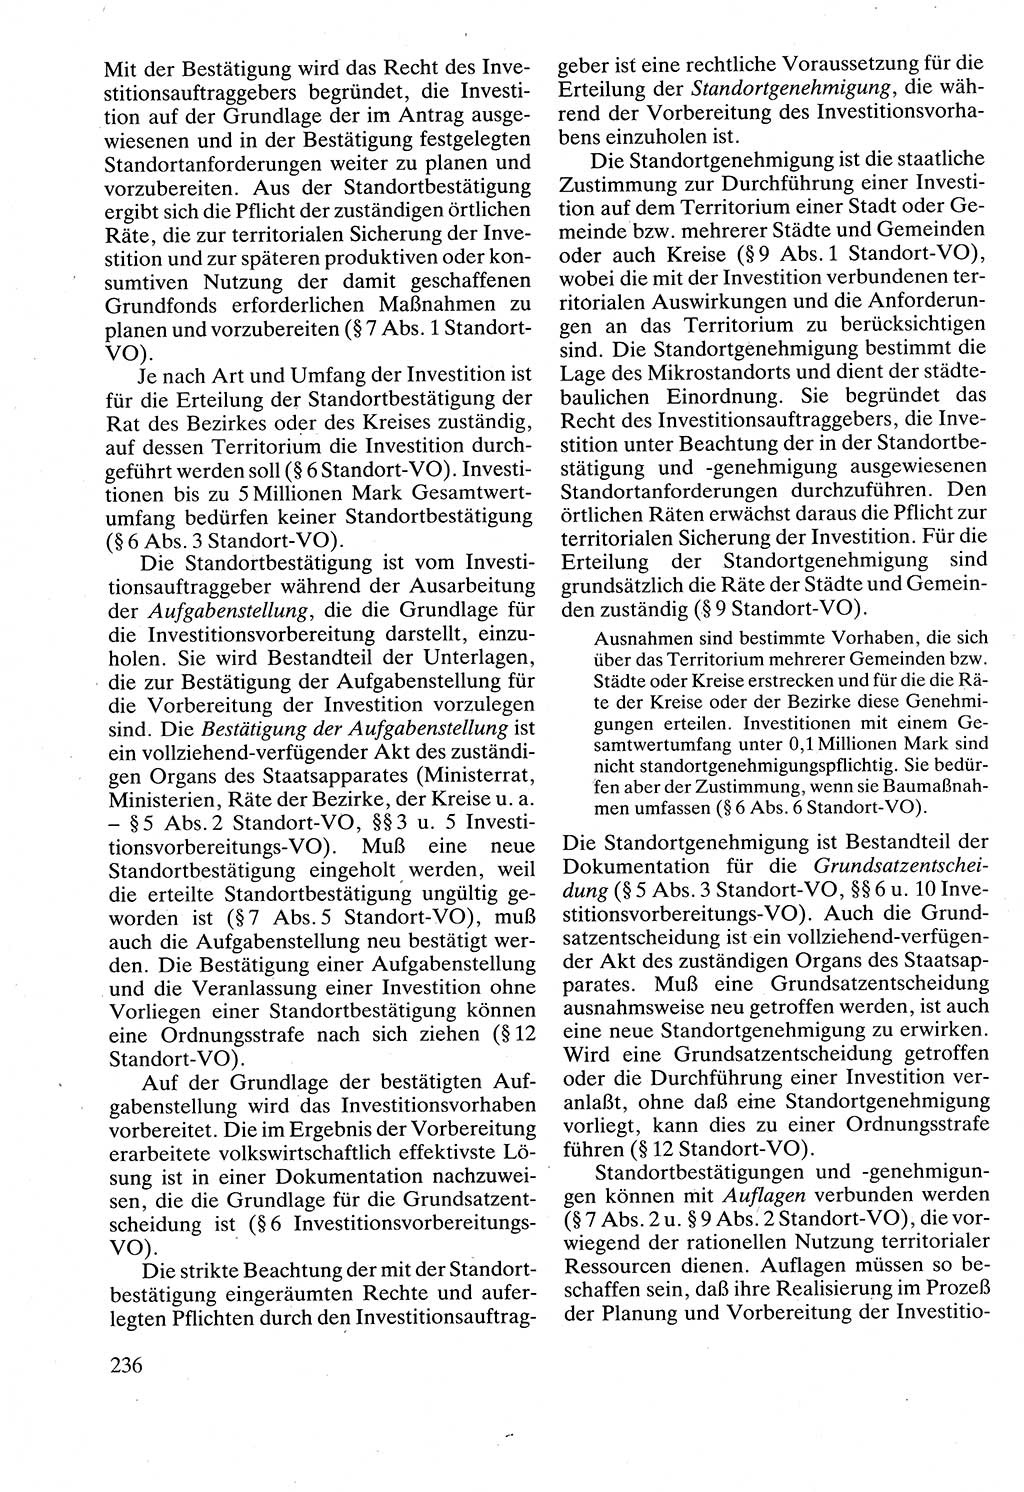 Verwaltungsrecht [Deutsche Demokratische Republik (DDR)], Lehrbuch 1988, Seite 236 (Verw.-R. DDR Lb. 1988, S. 236)